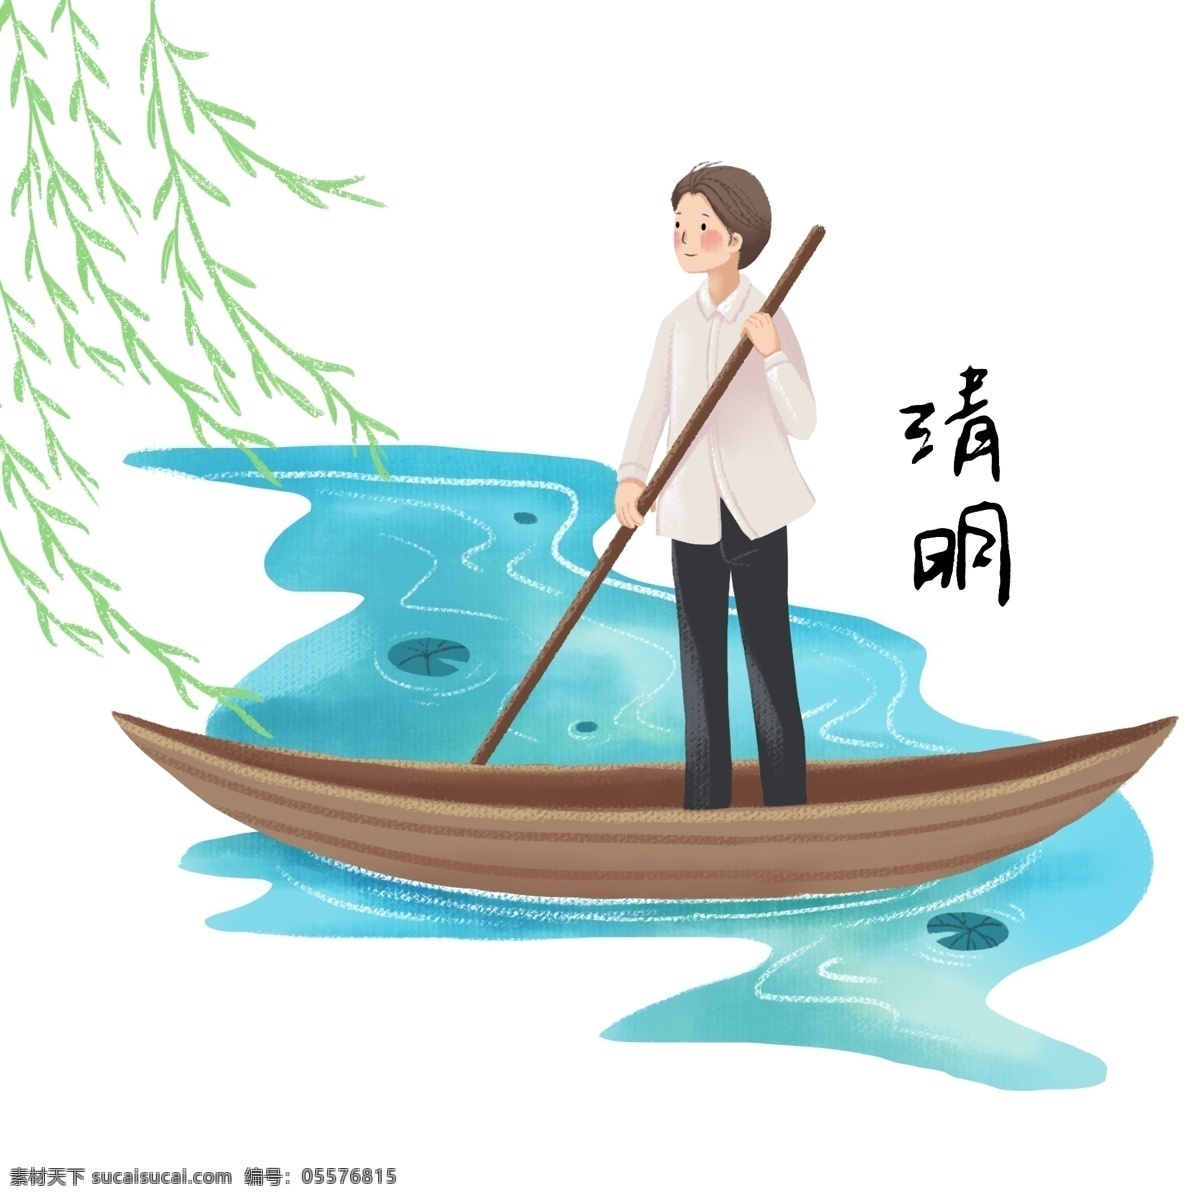 清明节 划船 小 男孩 人物 插画 划船的小男孩 黄色的小船 蓝色的河水 绿色的柳树 柳树装饰